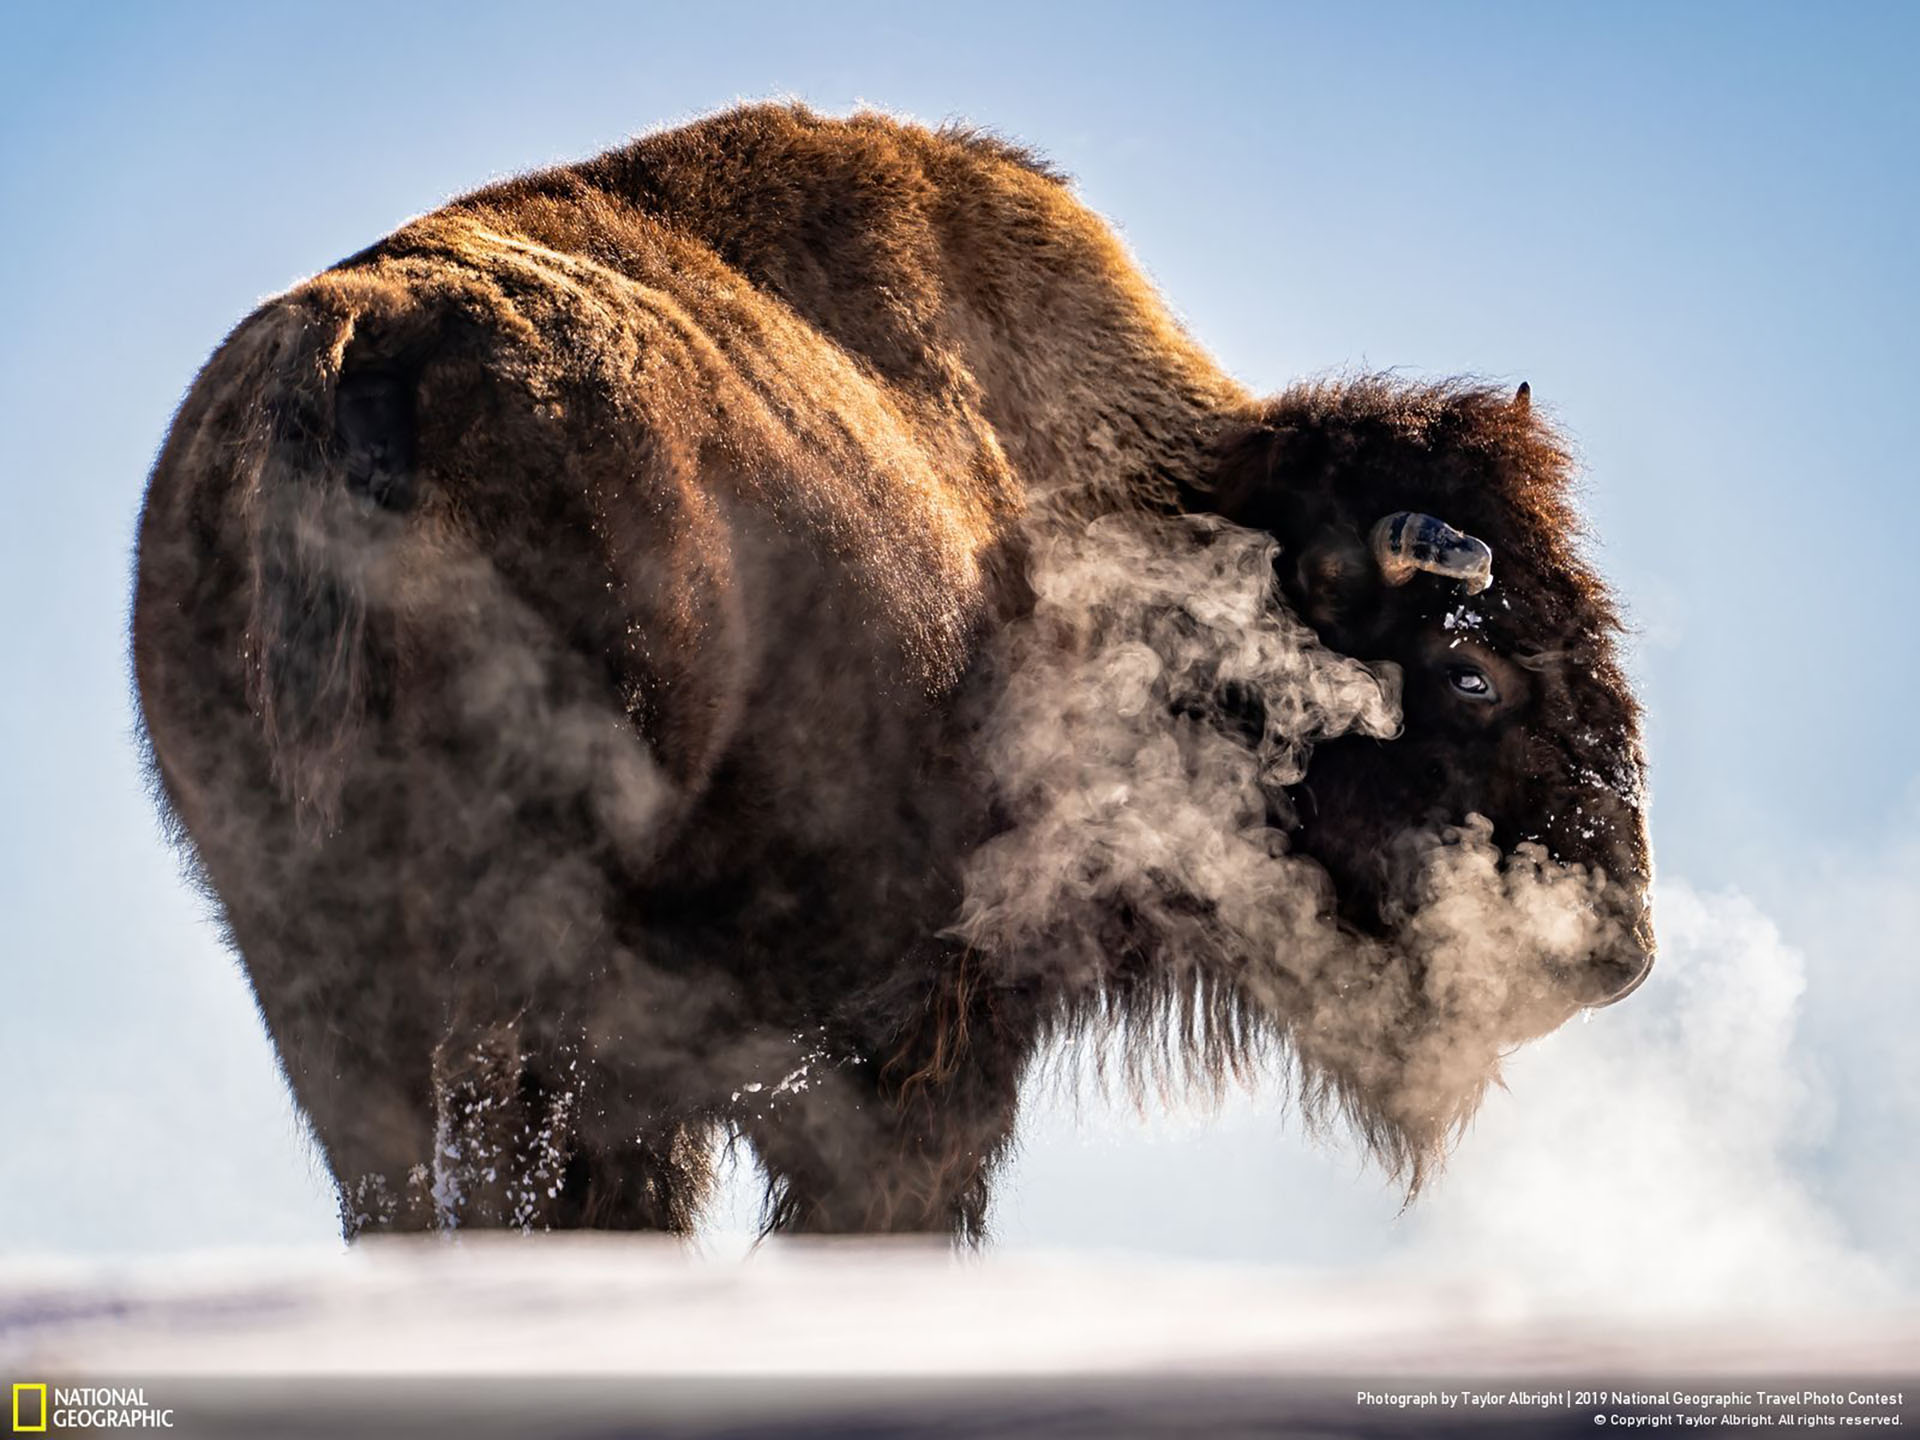 Los bisontes son animales impredecibles y territoriales que si se sienten amenazados pueden embestir. ("Exhausted" / 2019 National Geographic Travel Photo Contest / Categoría: Naturaleza)